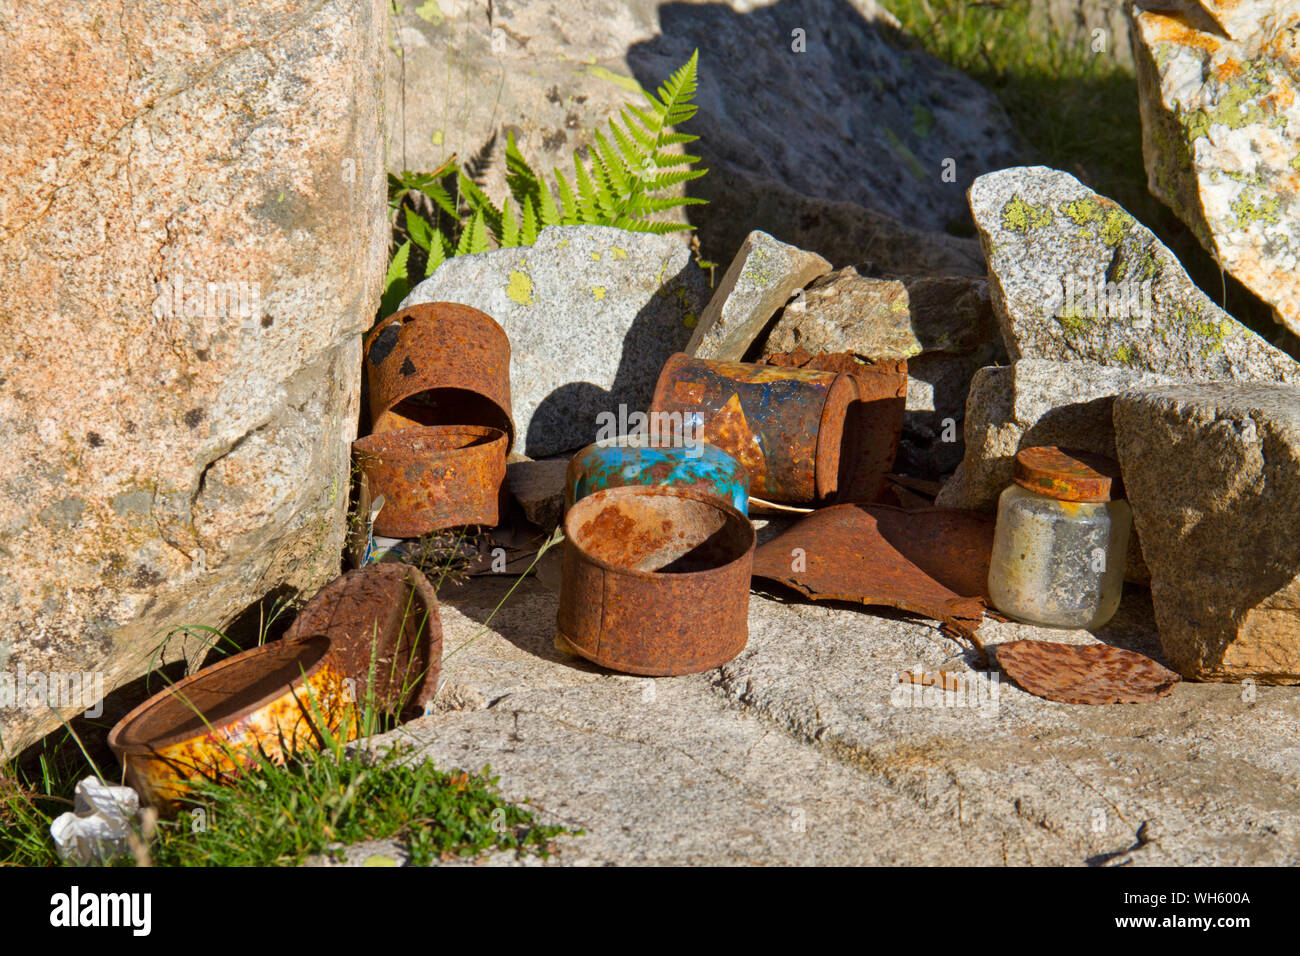 La pollution de l'environnement : boîtes de conserve rouillées laissées dans un camp de montagne Banque D'Images